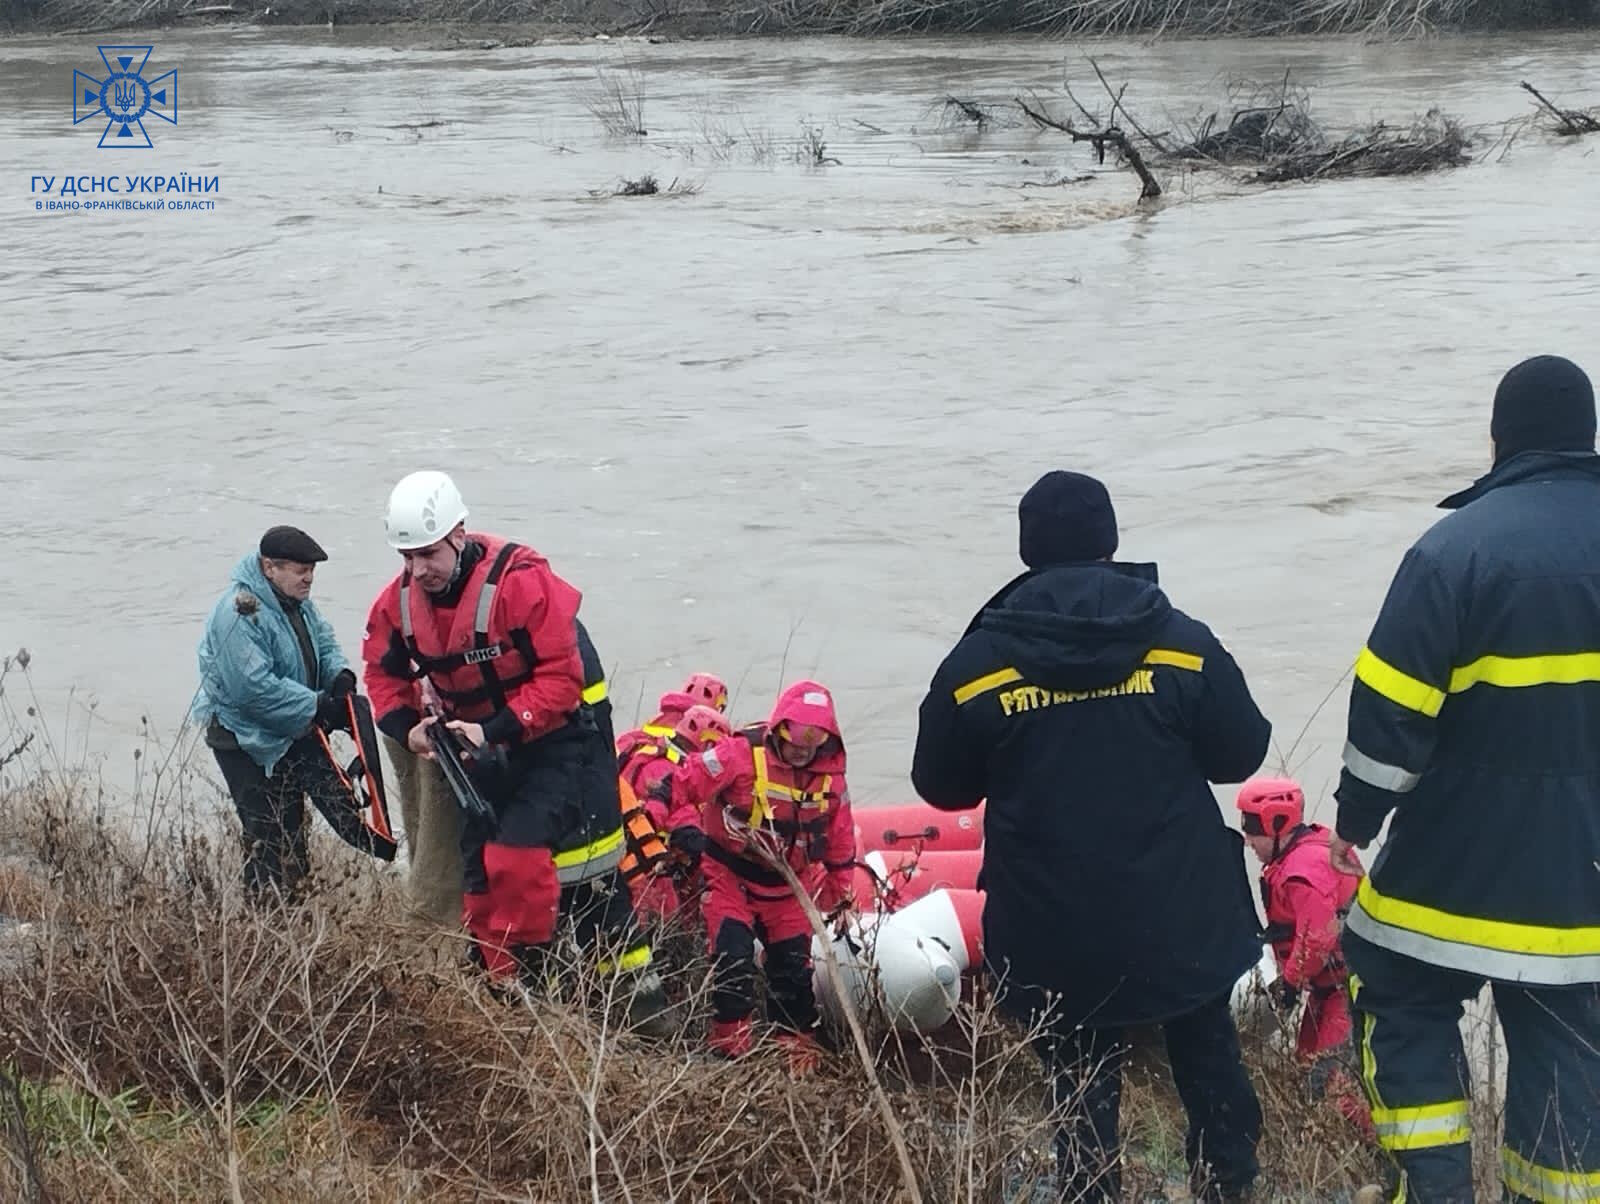 Закарпатье страдает от подтоплений, на Прикарпатье спасатели спасли людей из реки. Фото и видео